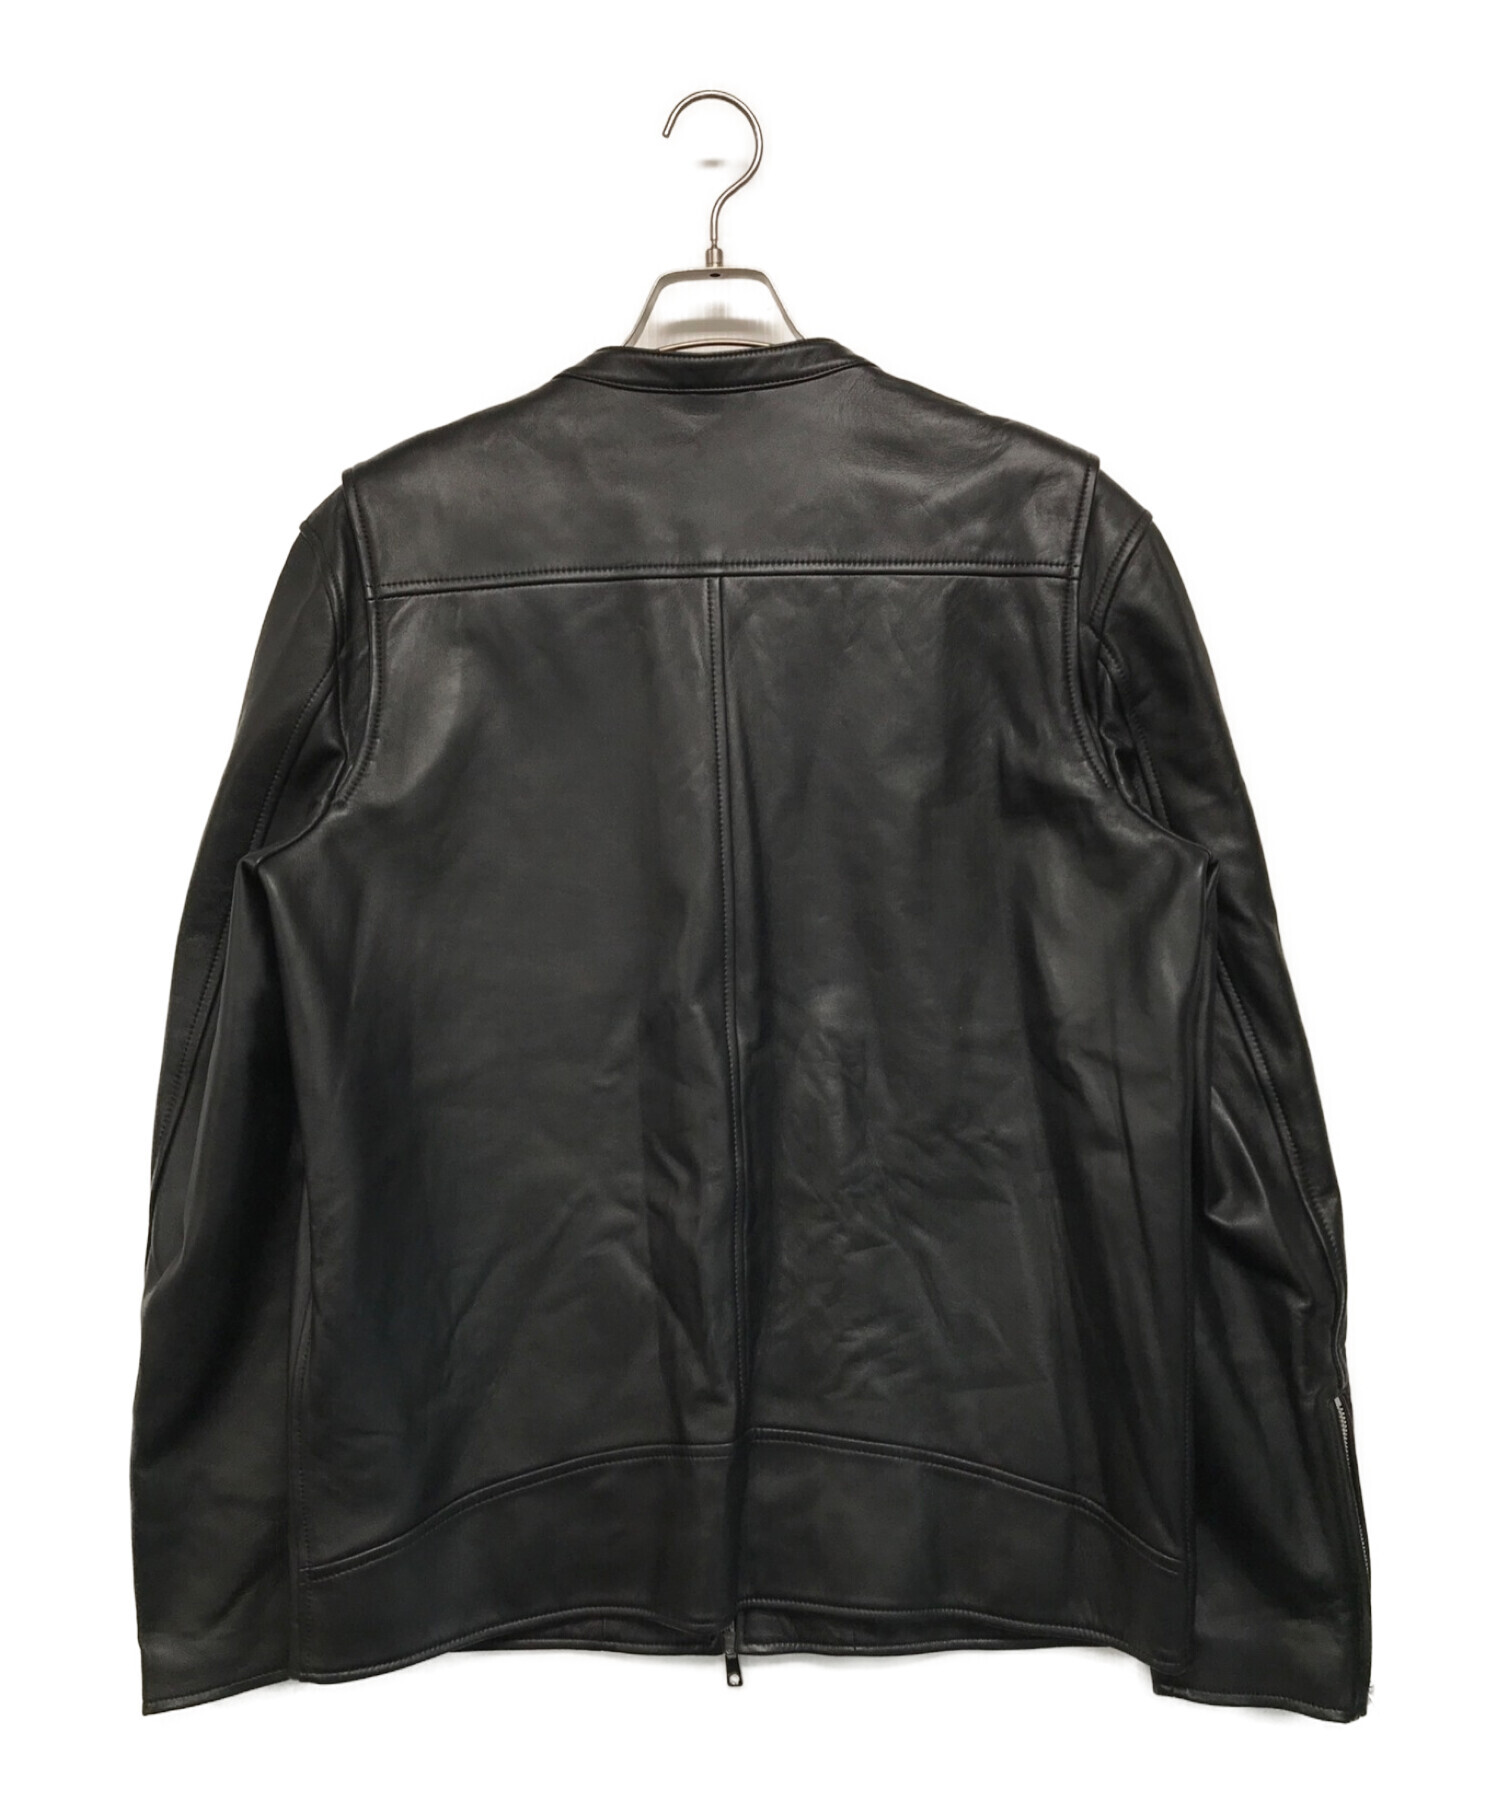 UNITED TOKYO (ユナイテッドトーキョー) ラムレザーシングルライダースジャケット ブラック サイズ:4 未使用品